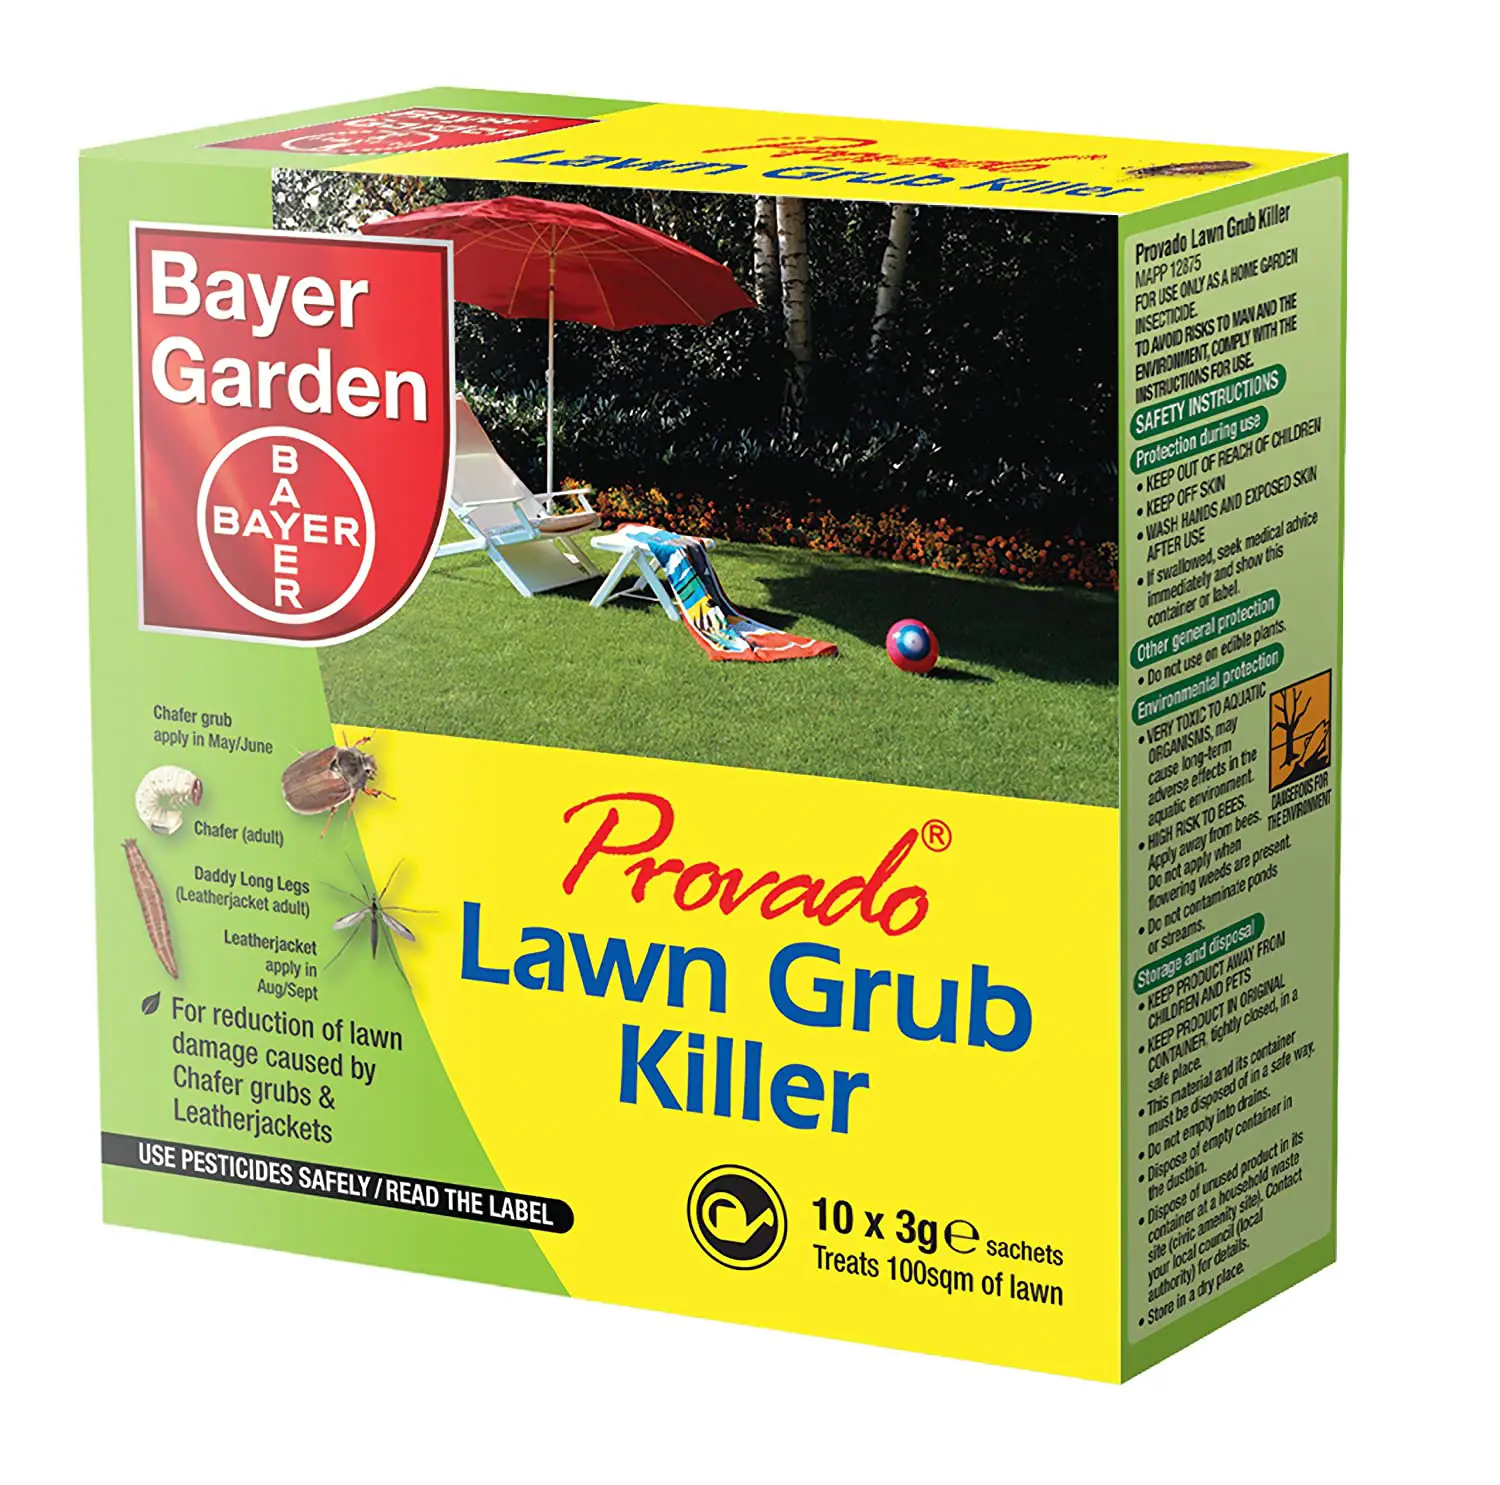 Provado Lawn Grub Killer 10 sachets: Amazon.co.uk: Garden &  Outdoors